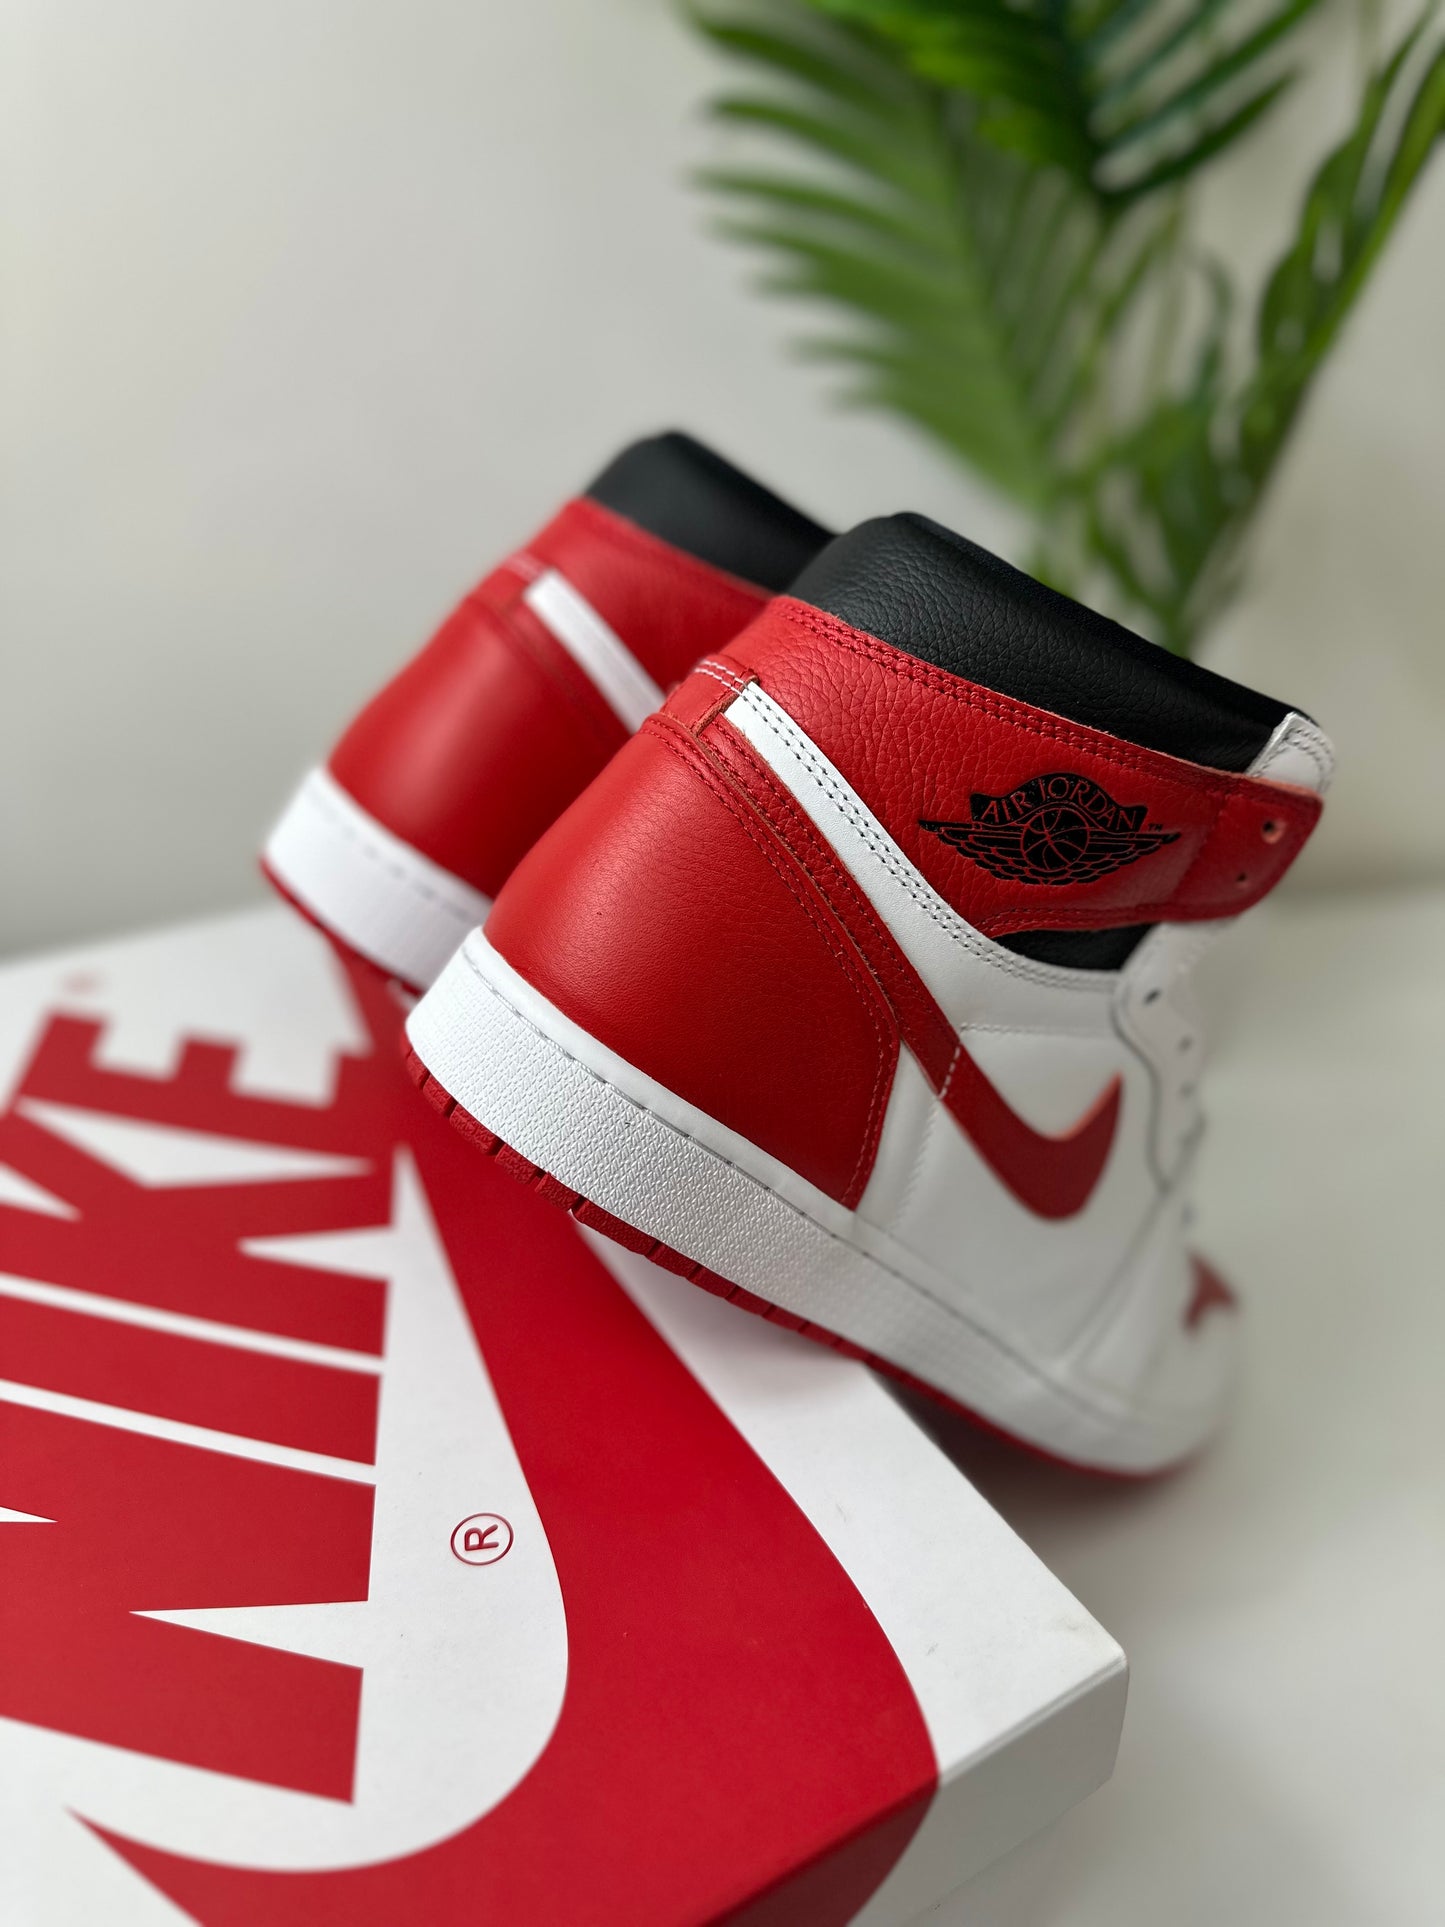 Air Jordan 1 “Heritage Red” Size 12 DS OG